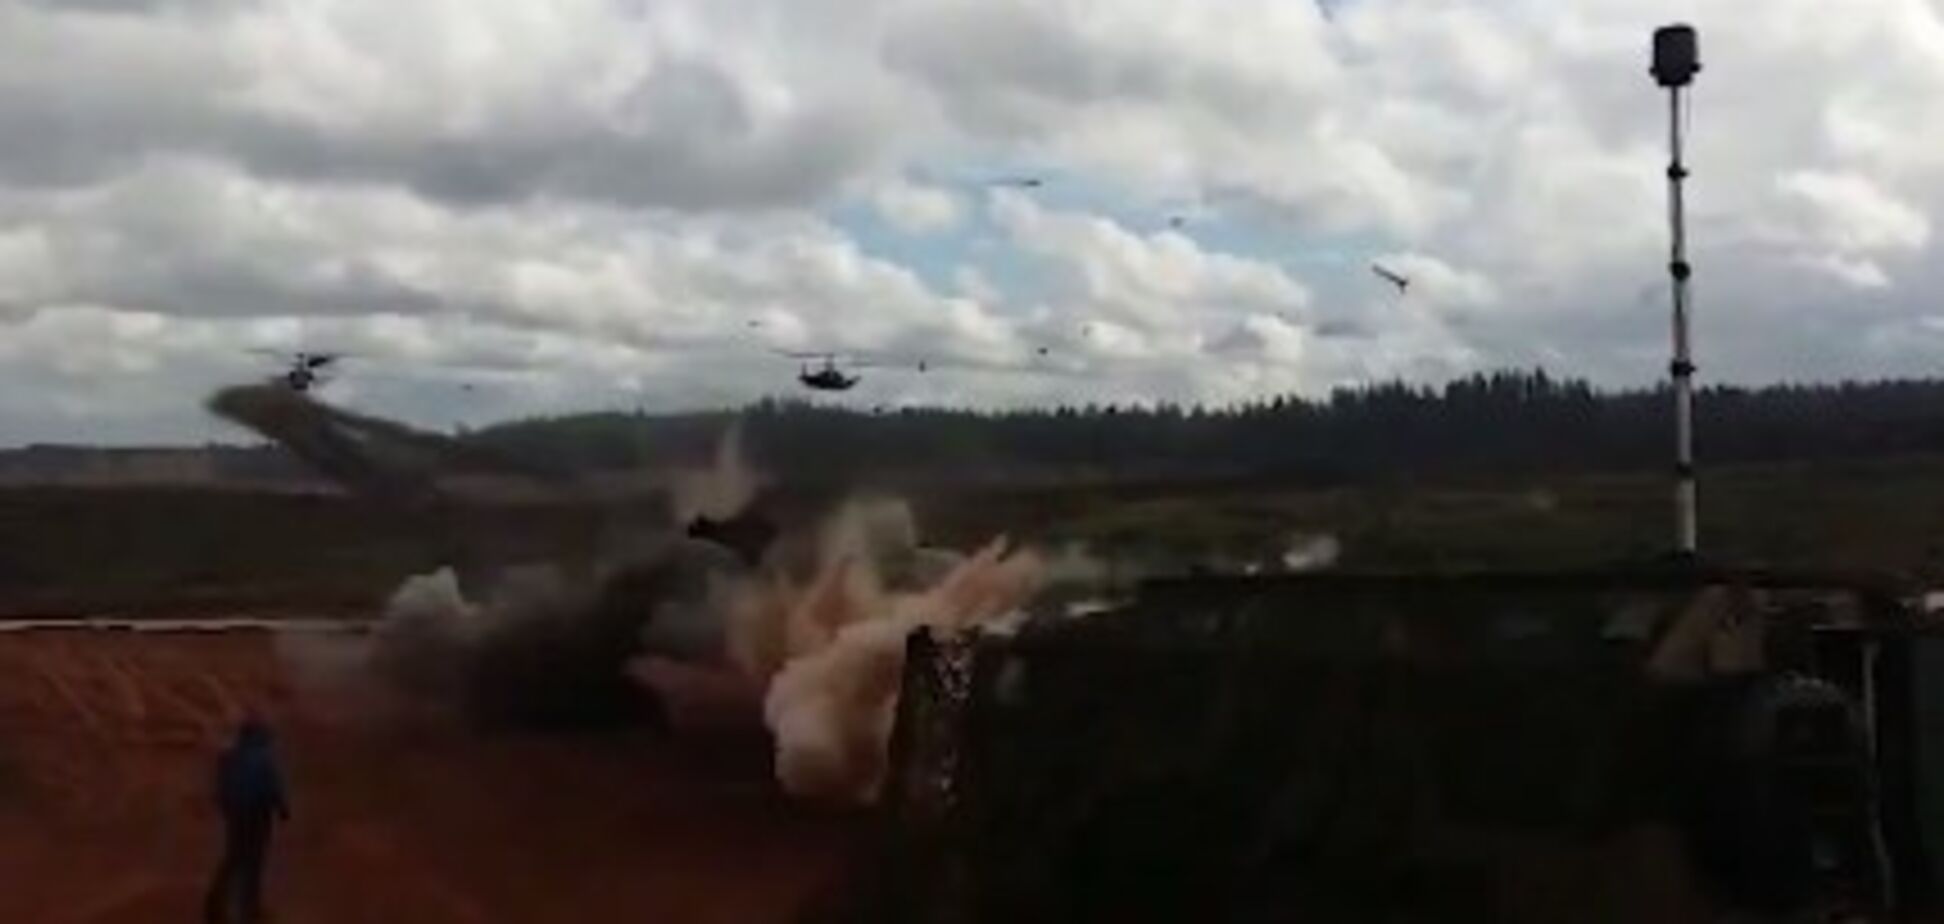 Обстрел зрителей вертолетом Ка-52: появилось еще одно видео